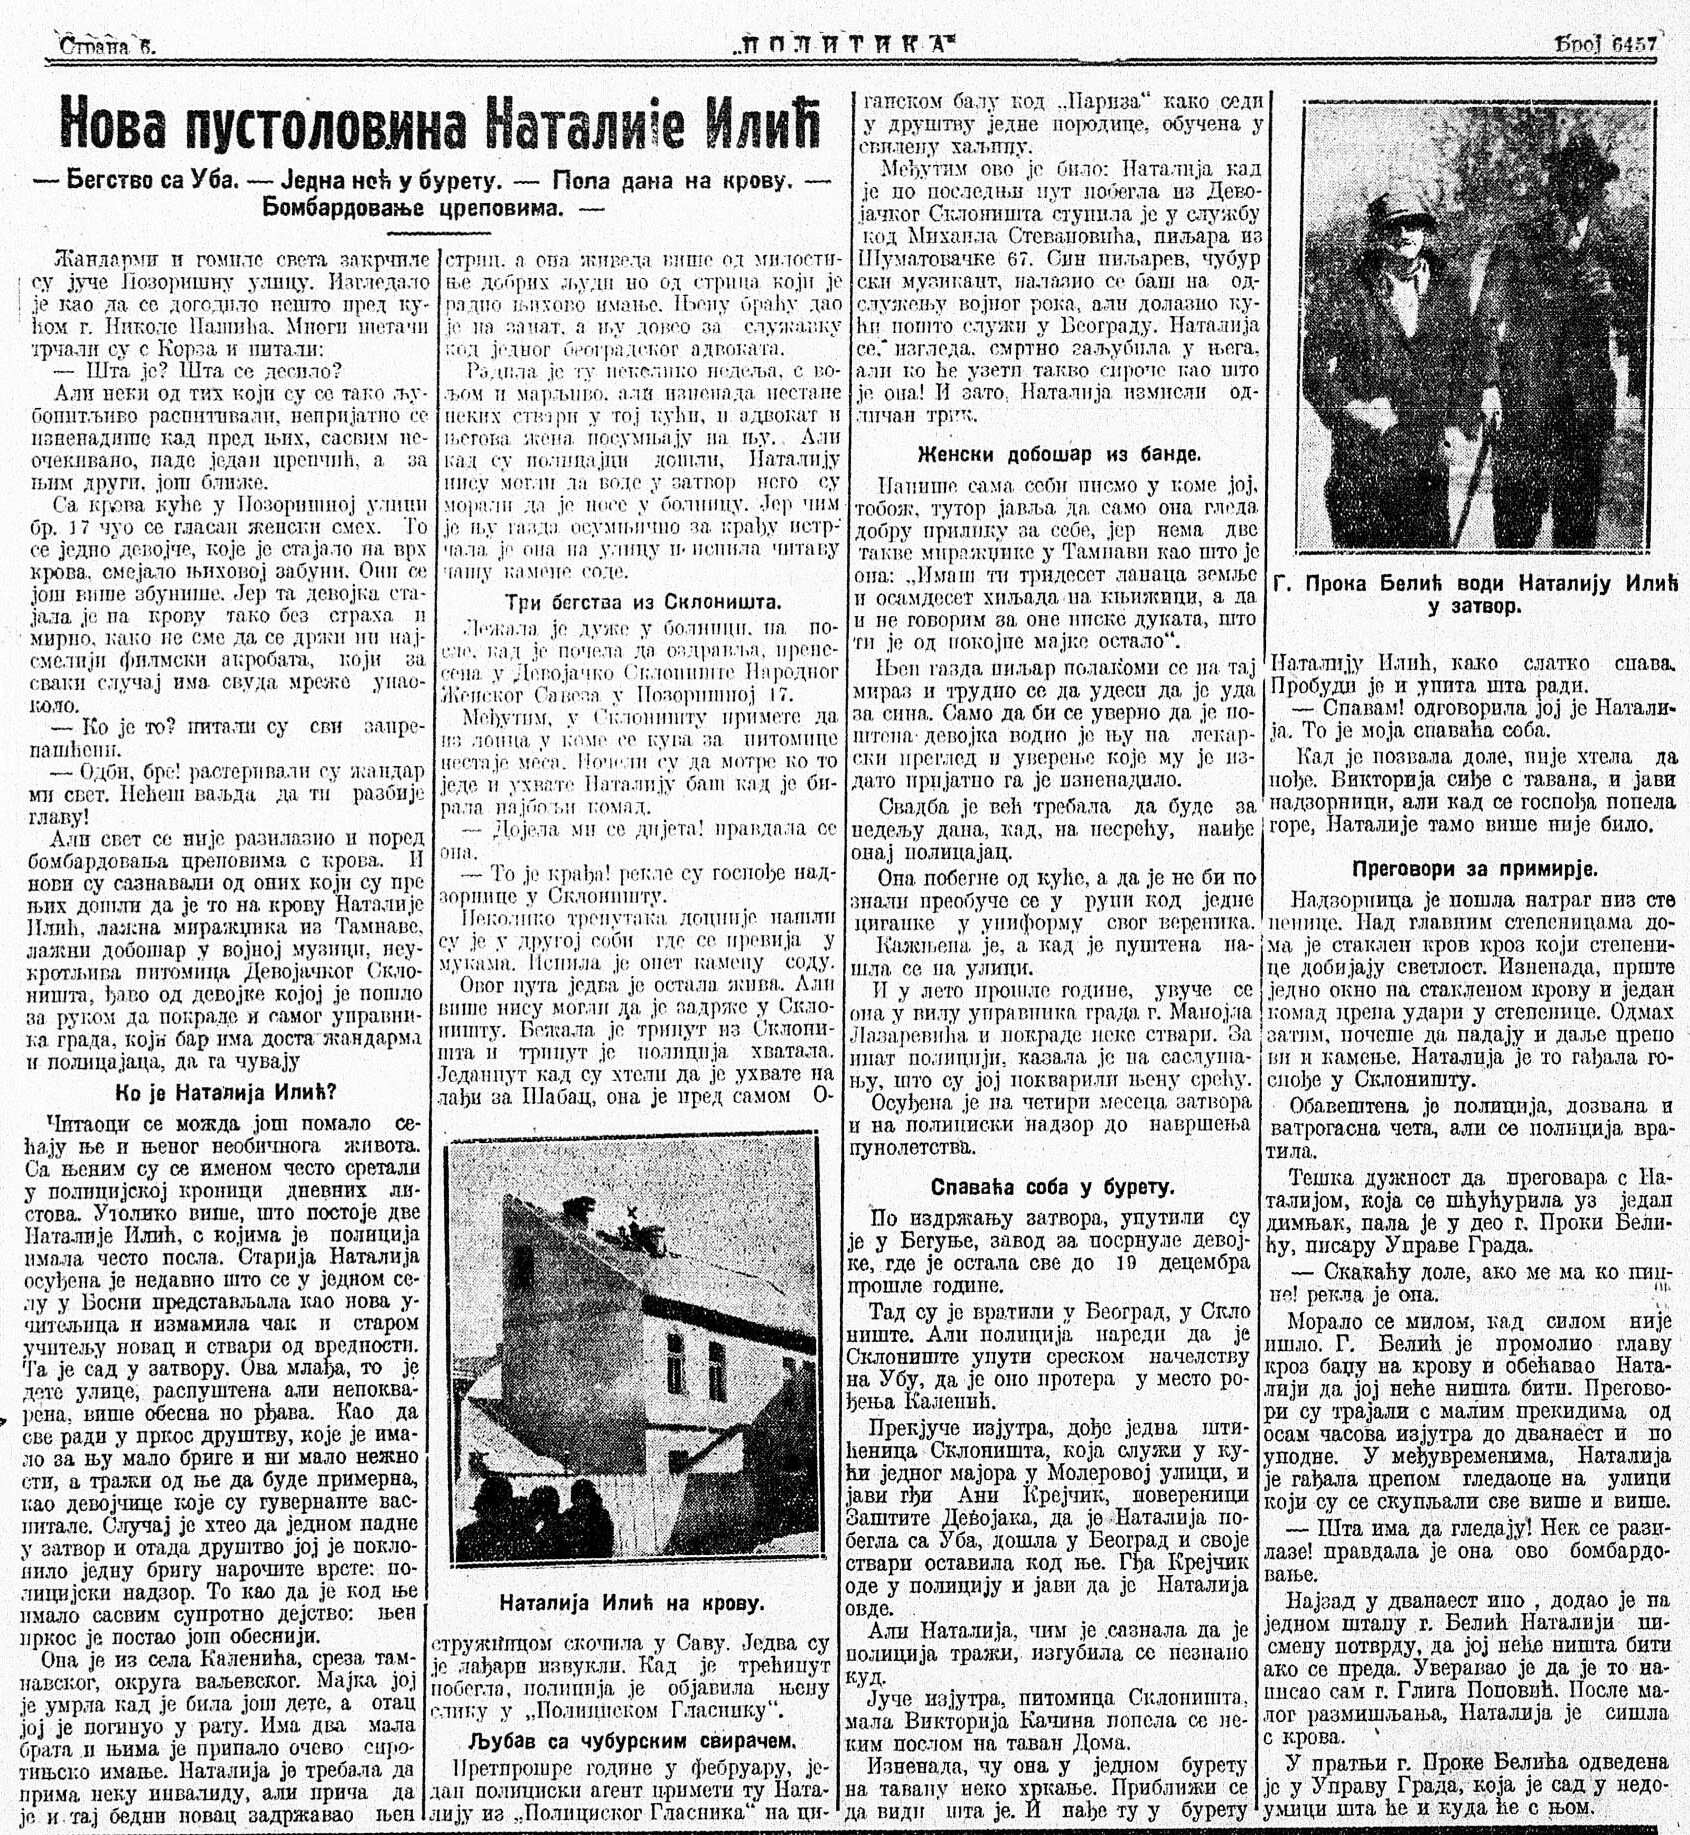 istorijski fragmenti - Page 27 1926-010